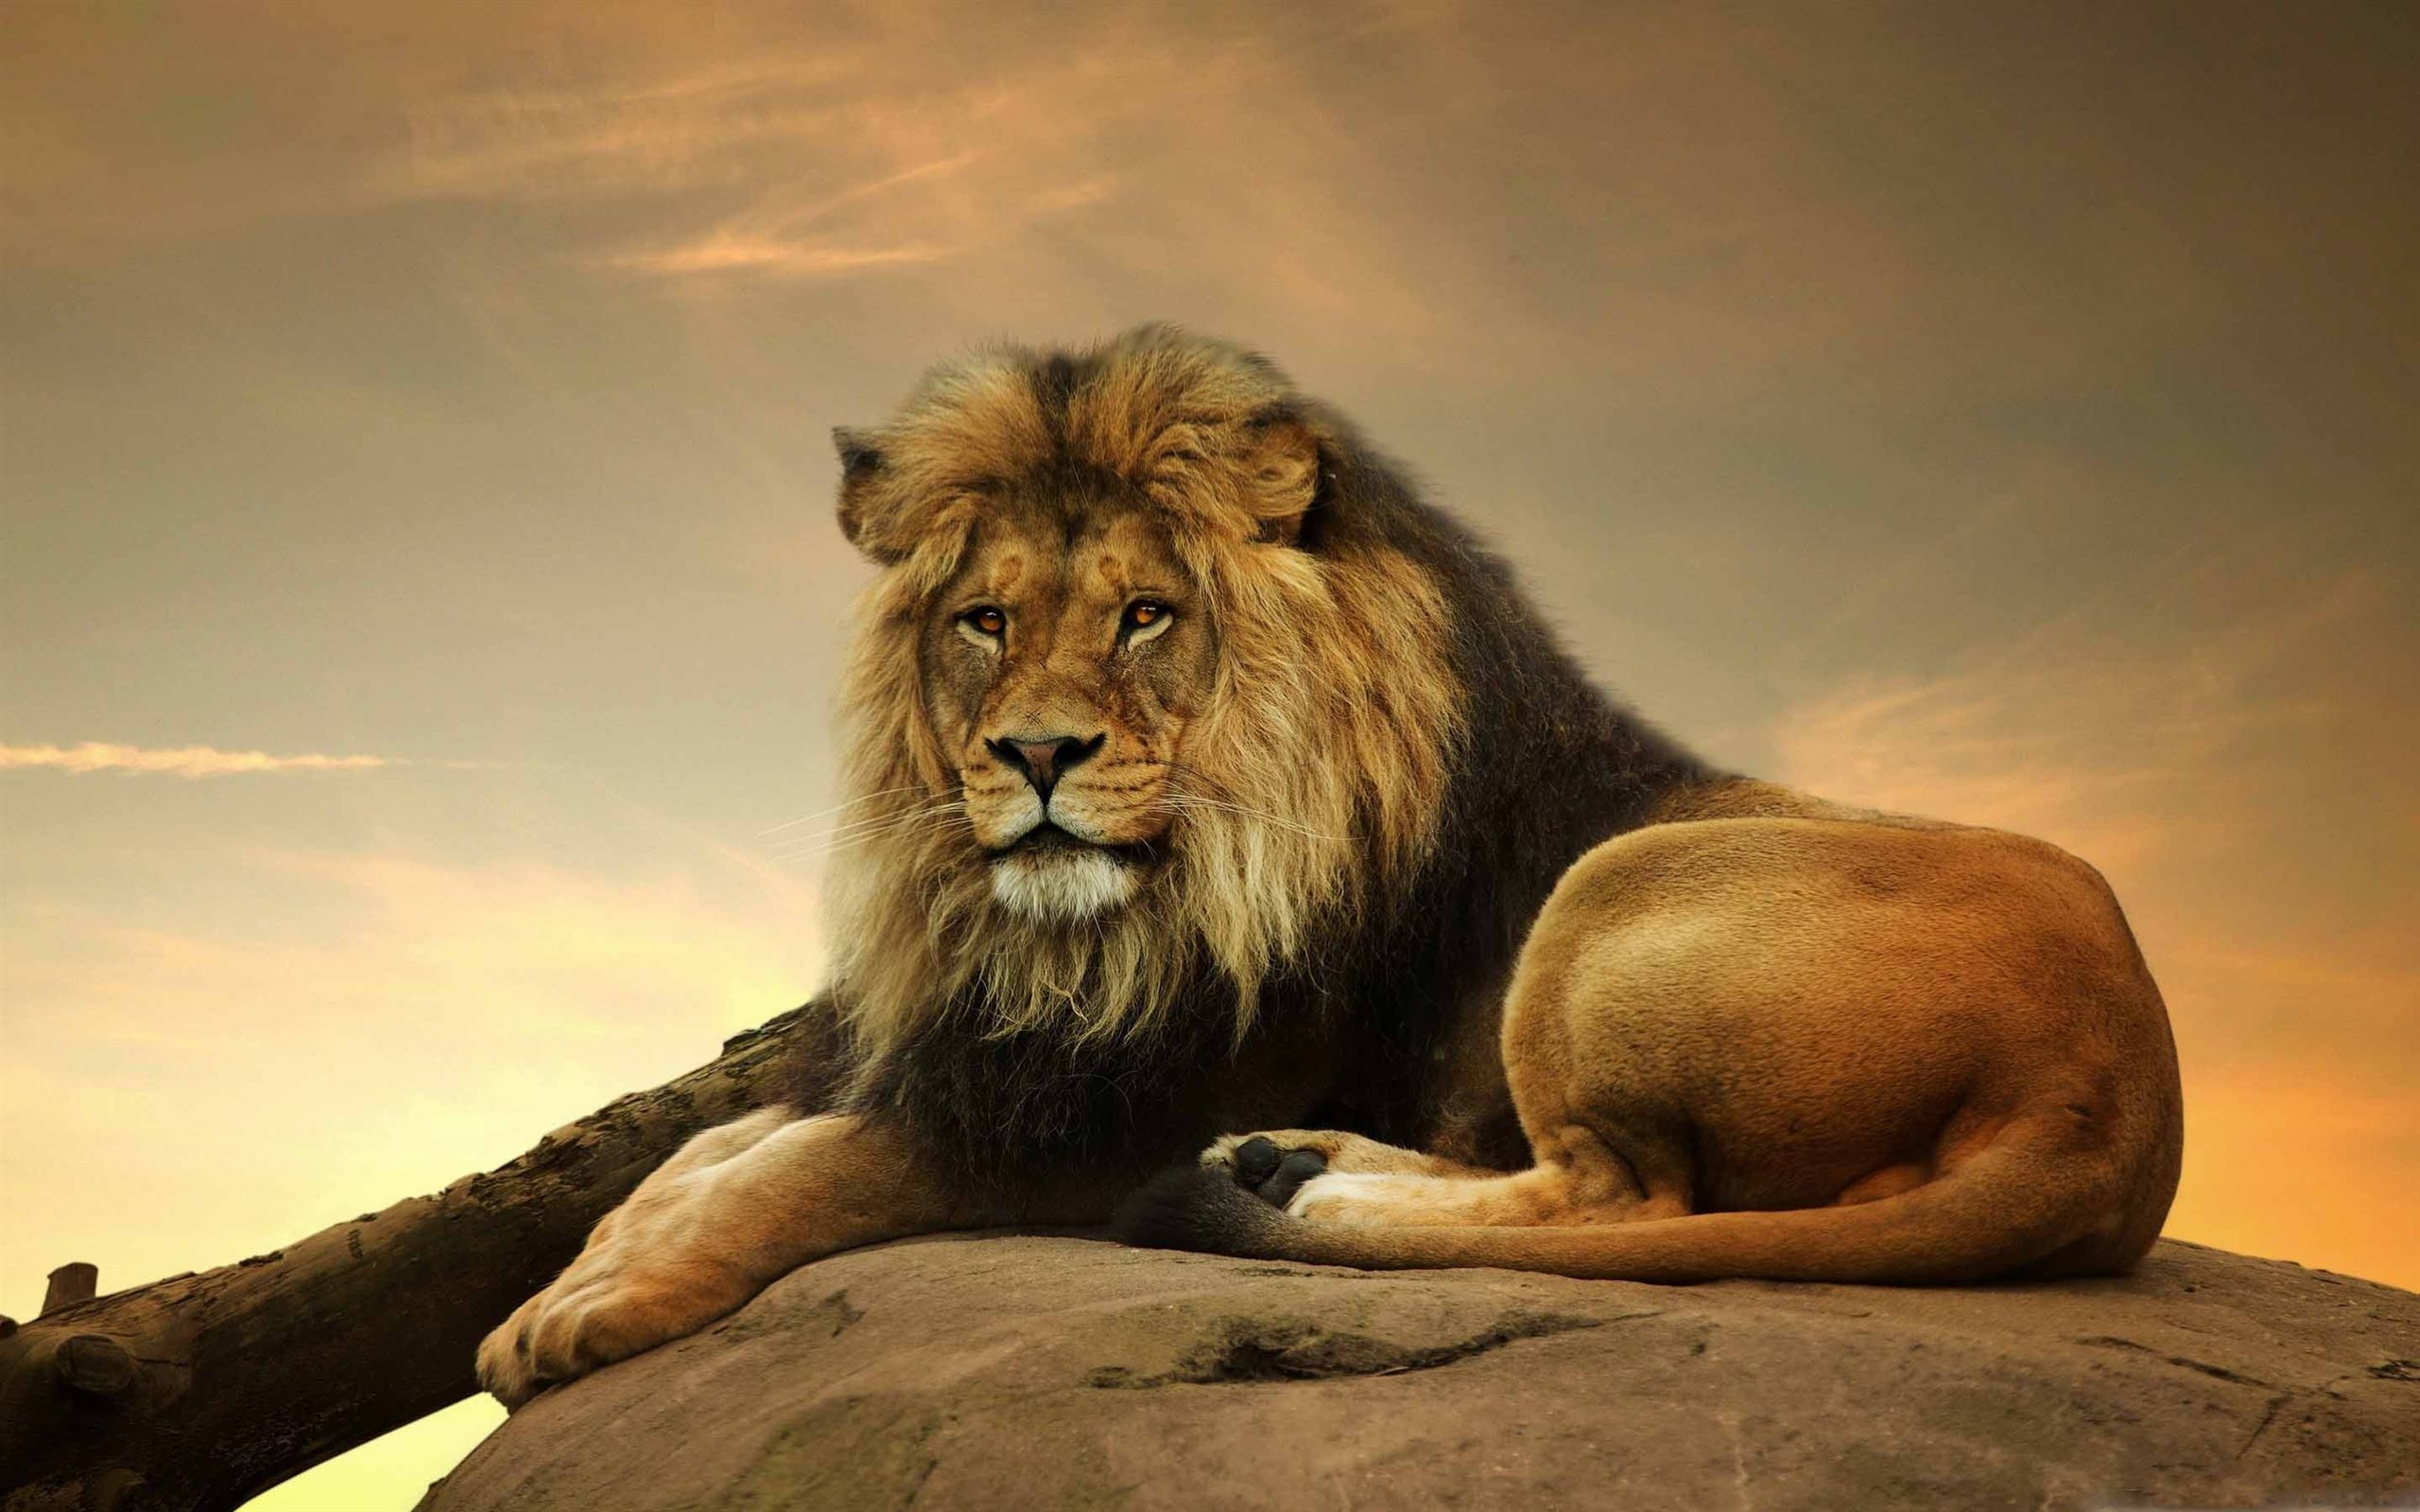 Lion Photo - Lion - HD Background